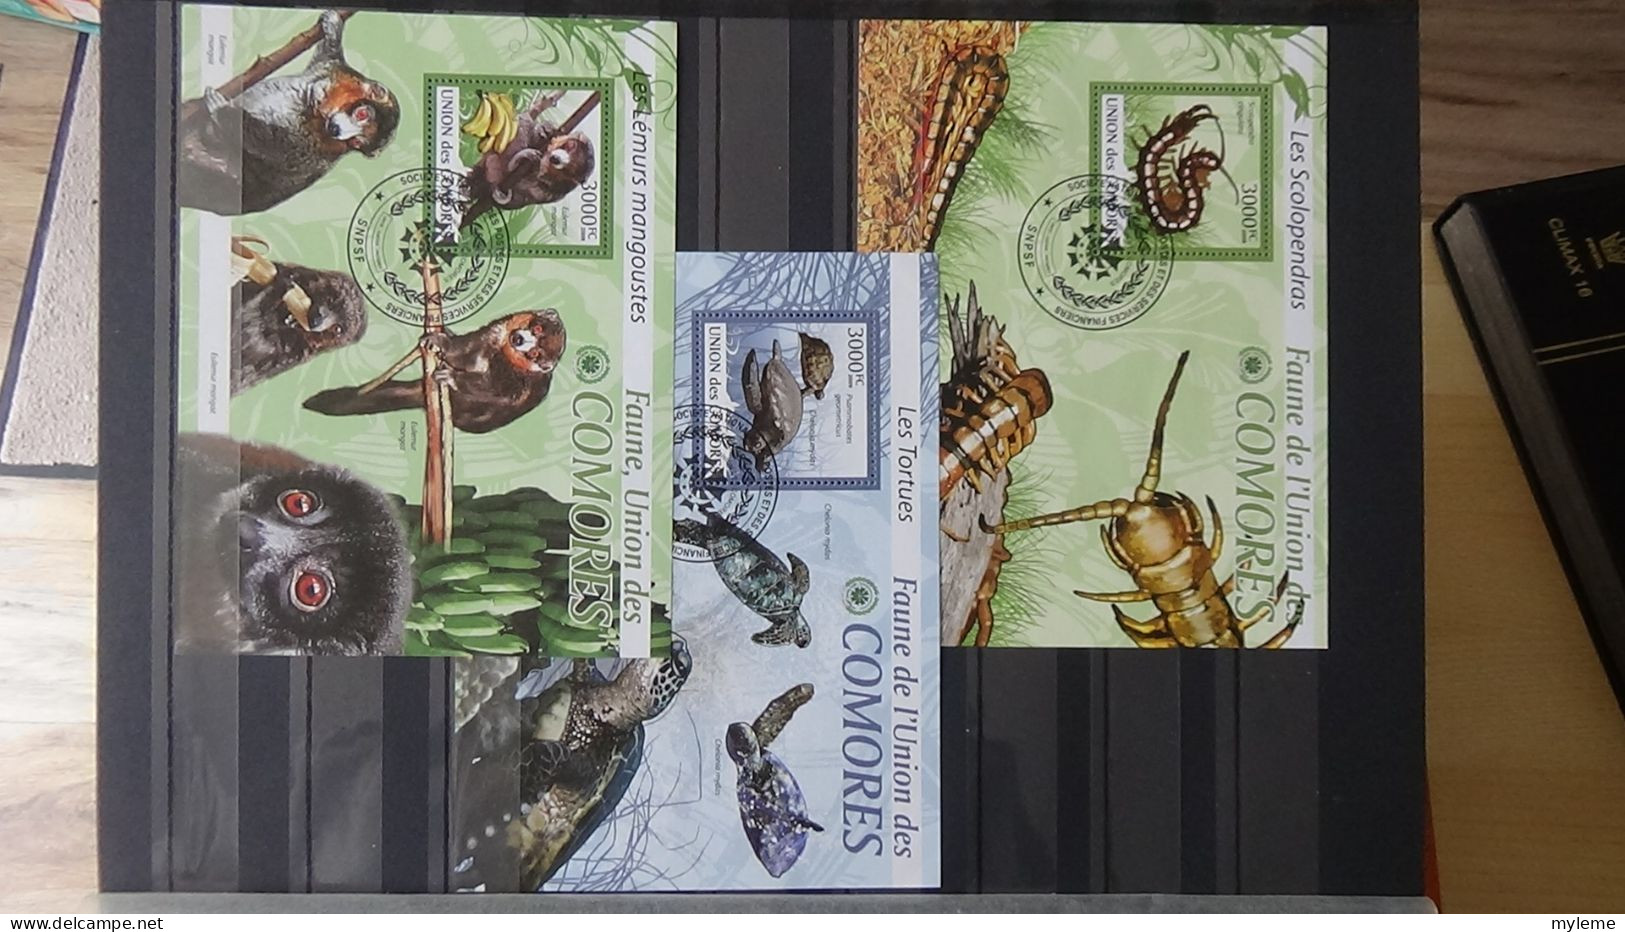 BF52 Bel ensemble de timbres et blocs oblitérés de divers pays Idéal pour thématiques. A saisir !!!